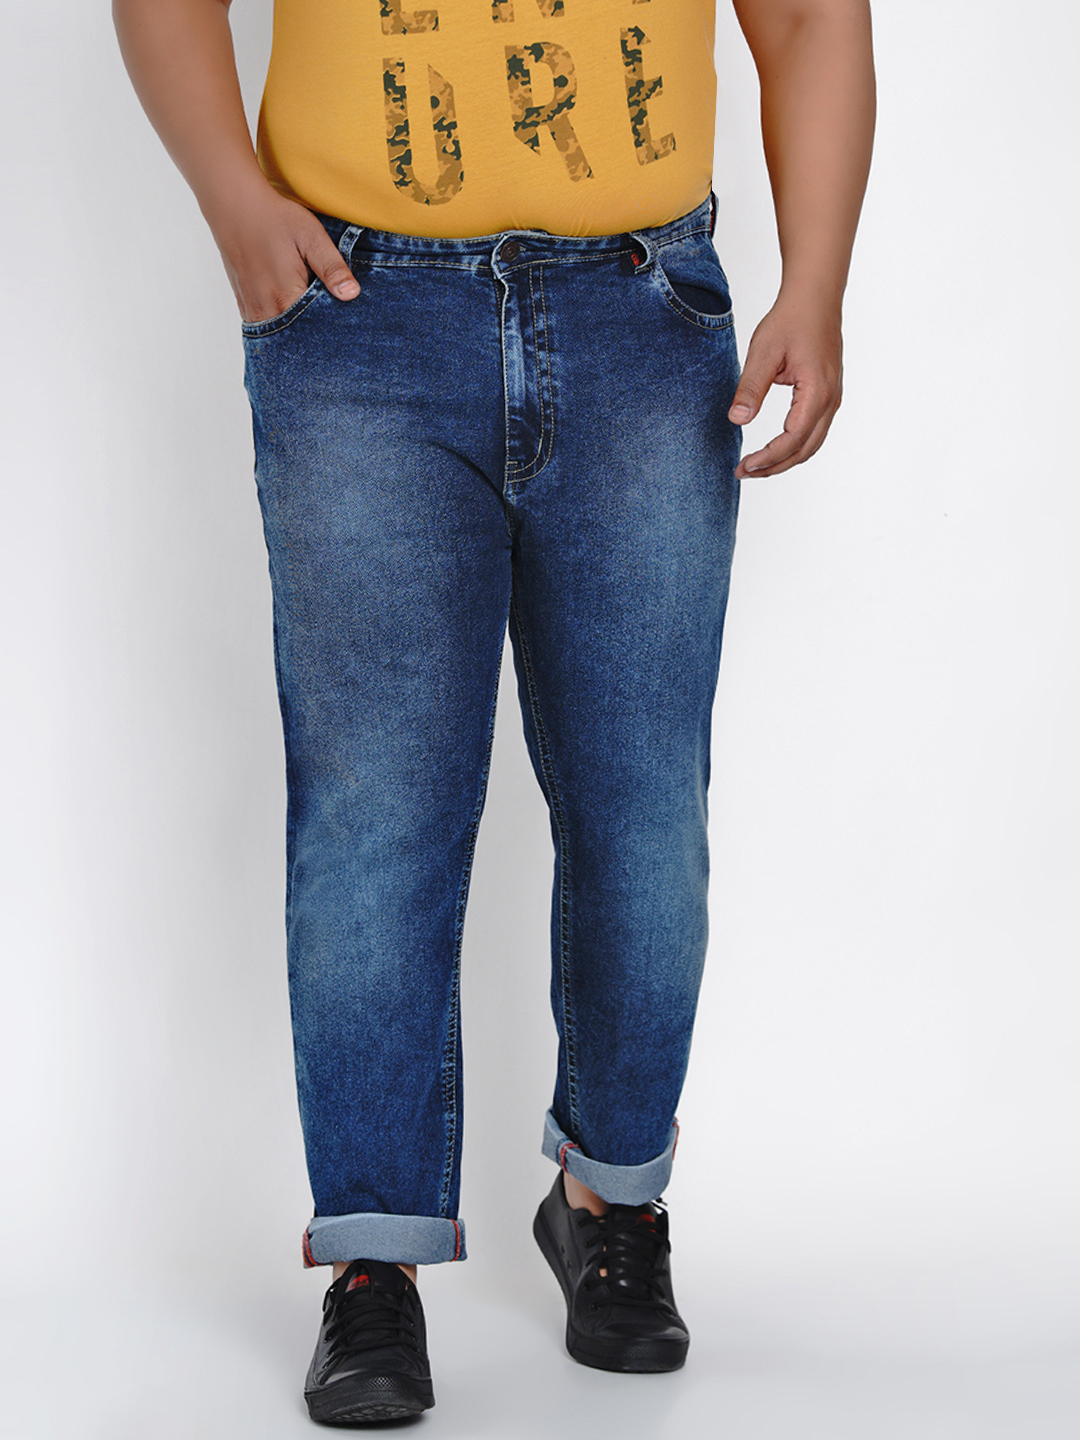 bottomwear/jeans/JPJ2013/jpj2013-3.jpg